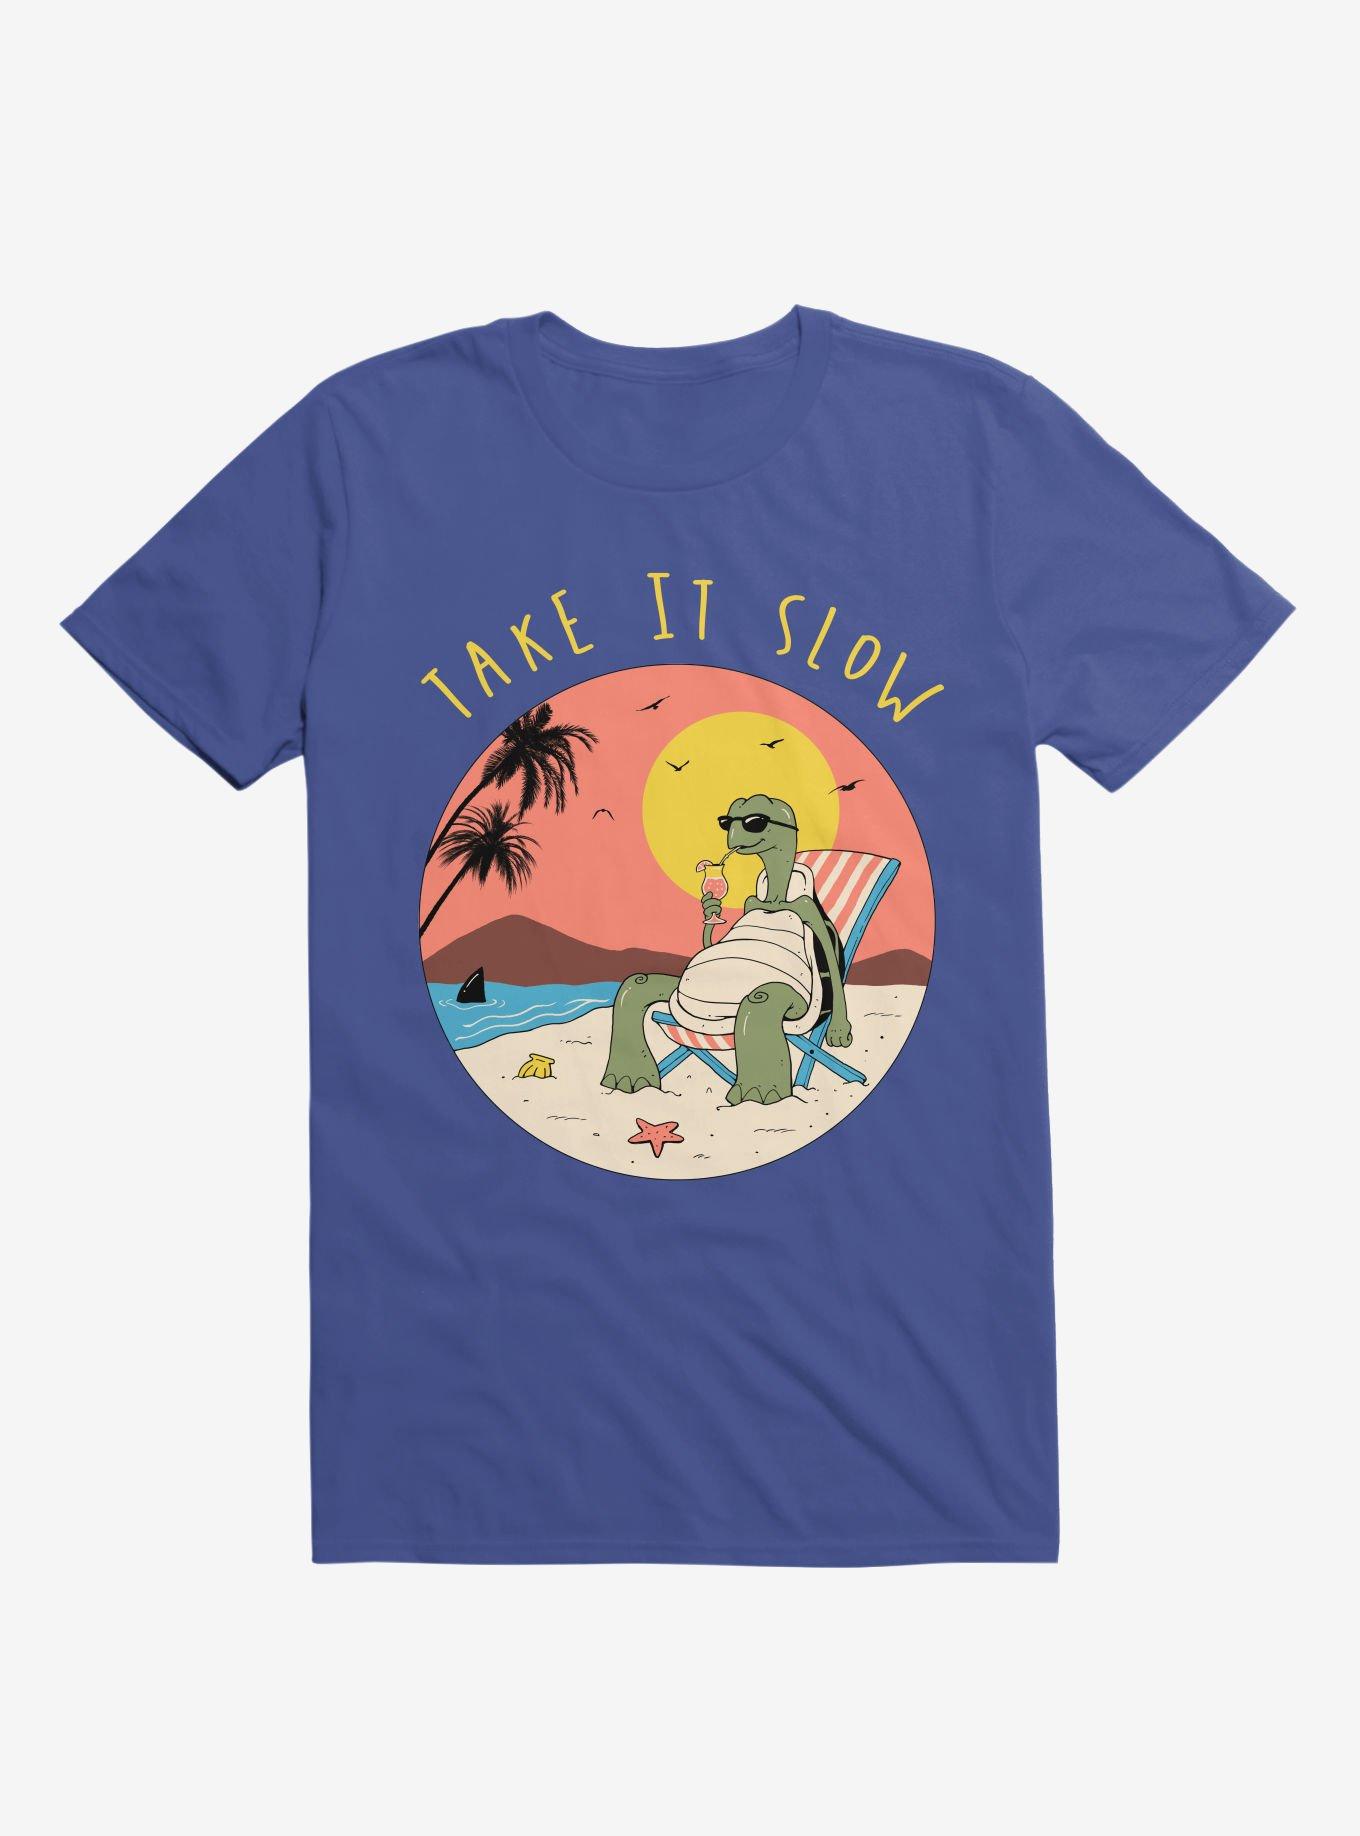 Take It Slow! Turtle Beach Royal Blue T-Shirt